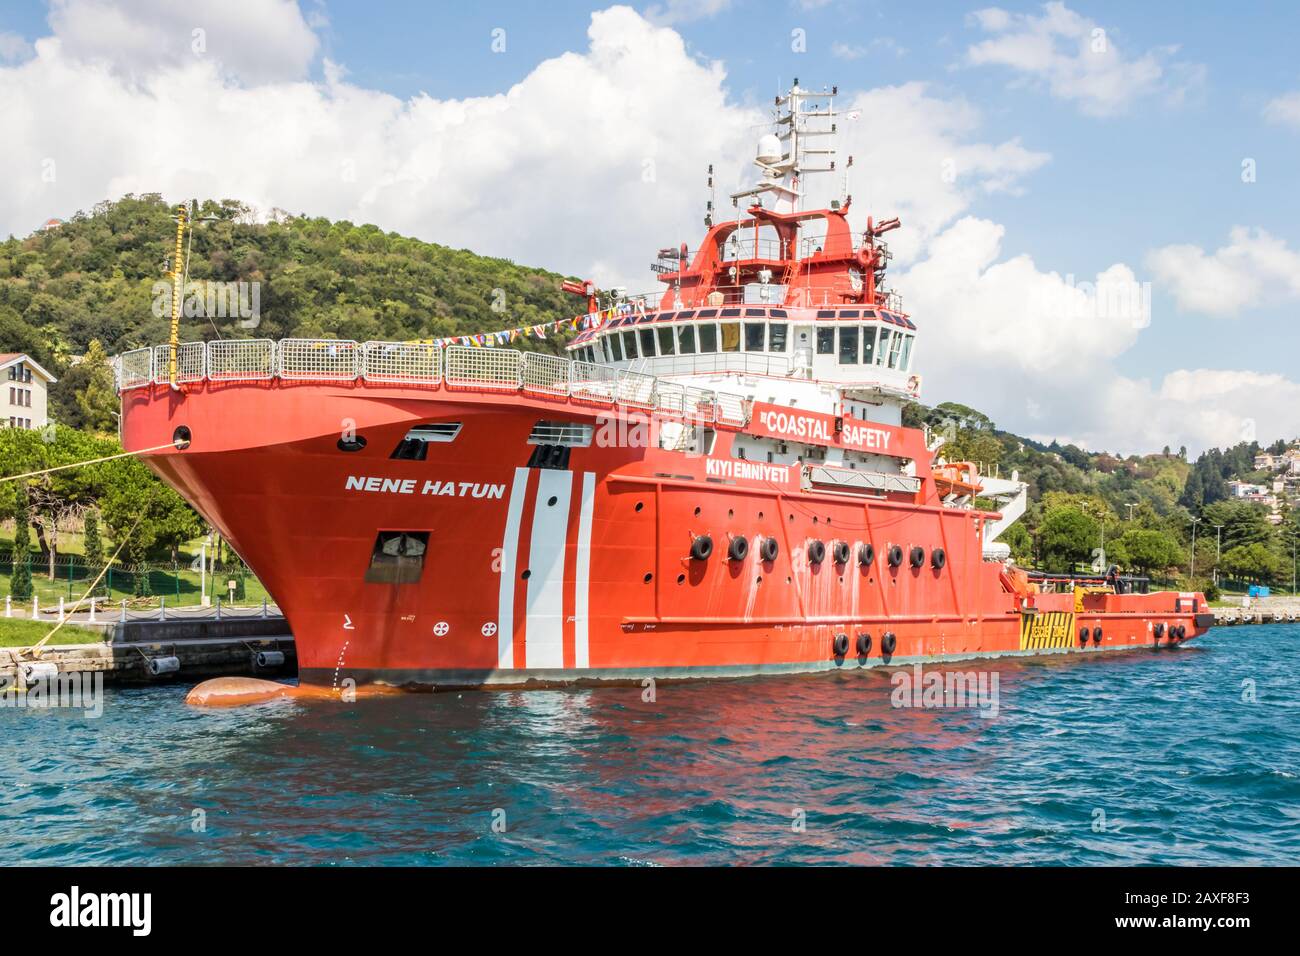 Istanbul, Turchia - Agosto 30th 2019: La nave costiera di sicurezza Nene Hatun. Questa è una barca antincendio. Foto Stock